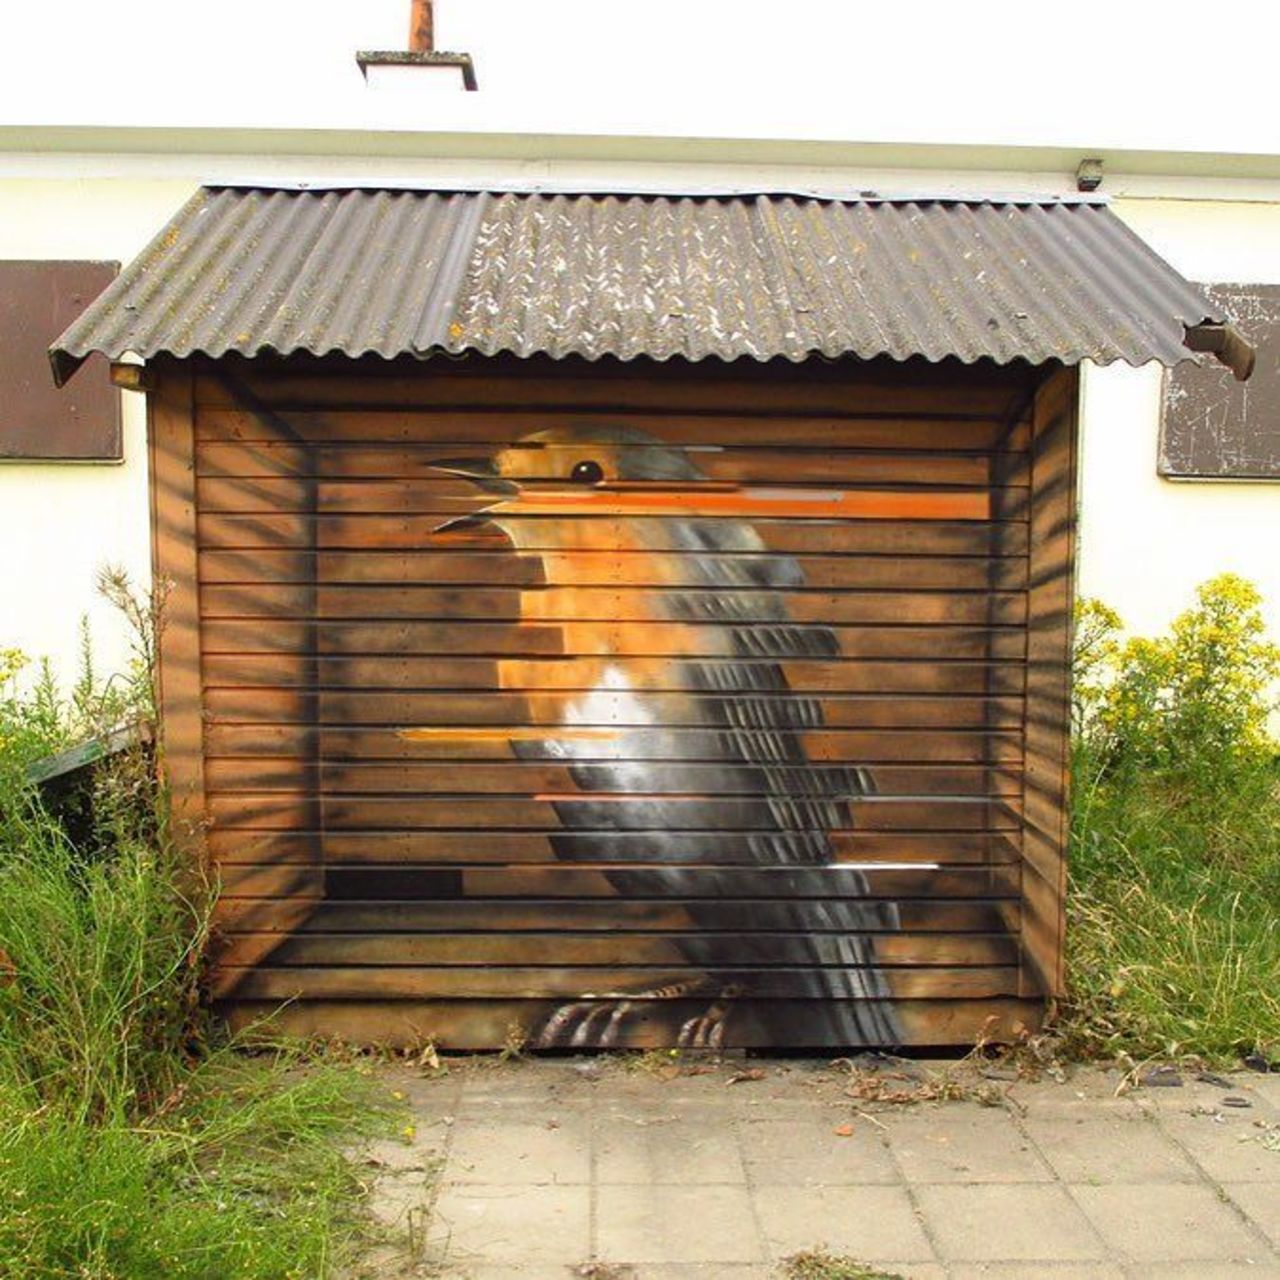 Bird by @ceepil#globalstreetart #belgium #bird #birdhouse #mural #graffiti #3dgraffiti #glitchhttp://globalstreetart.com/cee https://t.co/bGcbQYXOGz